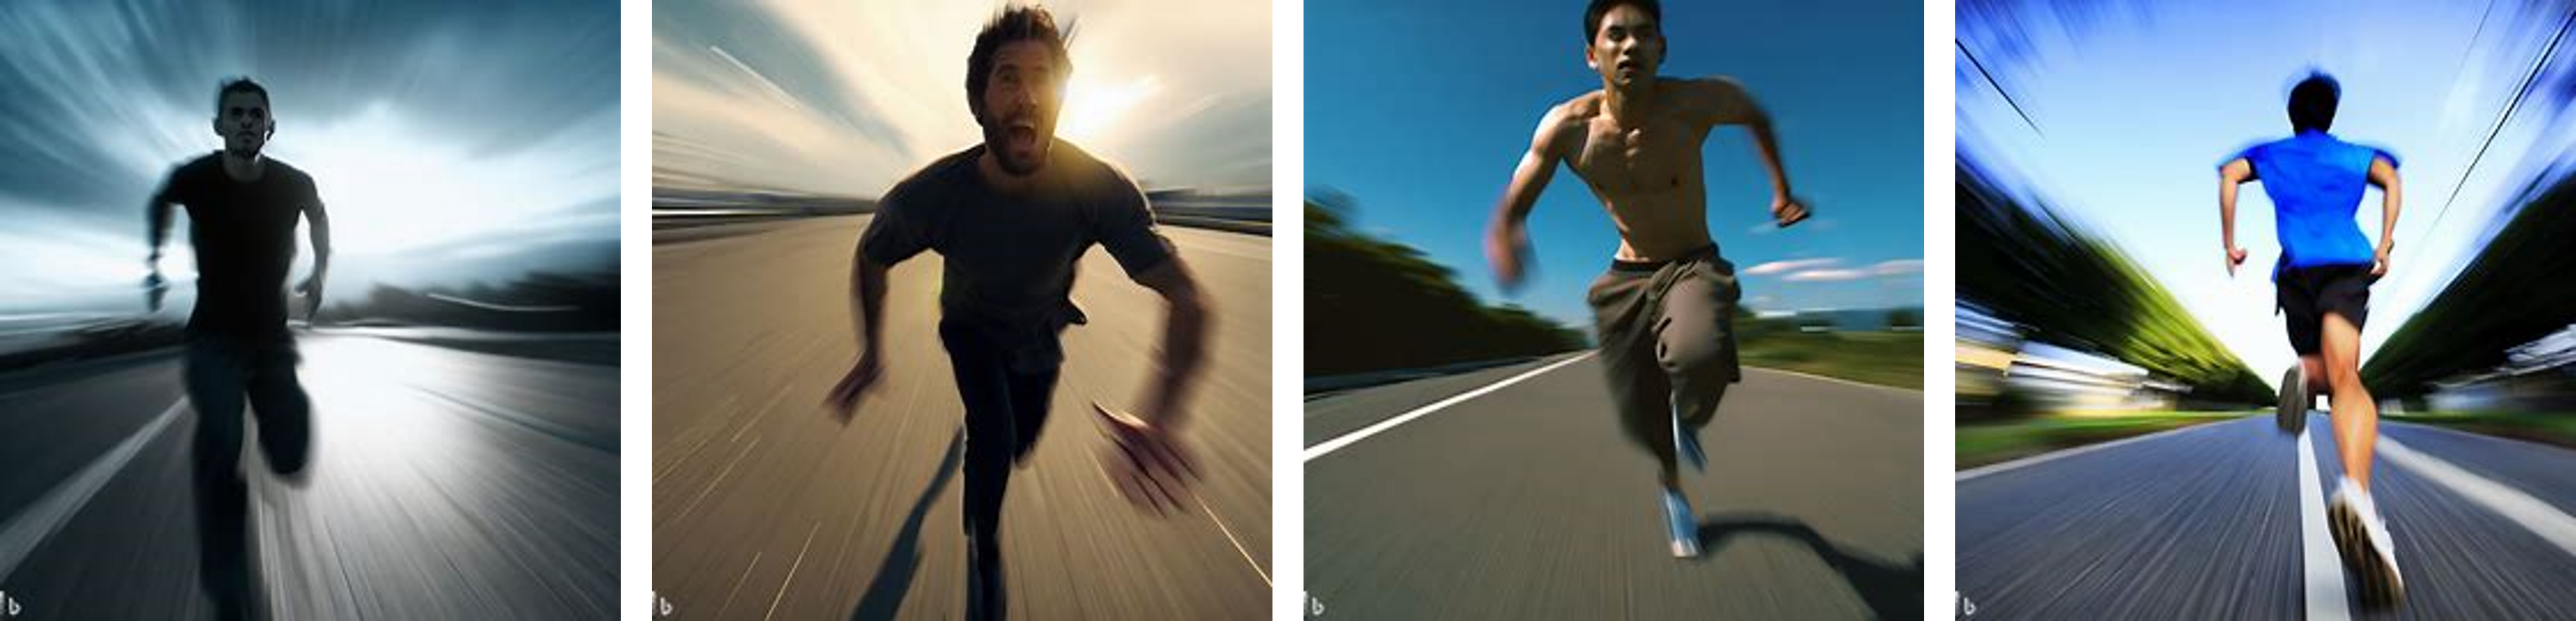 running man, {high speed}, FOV